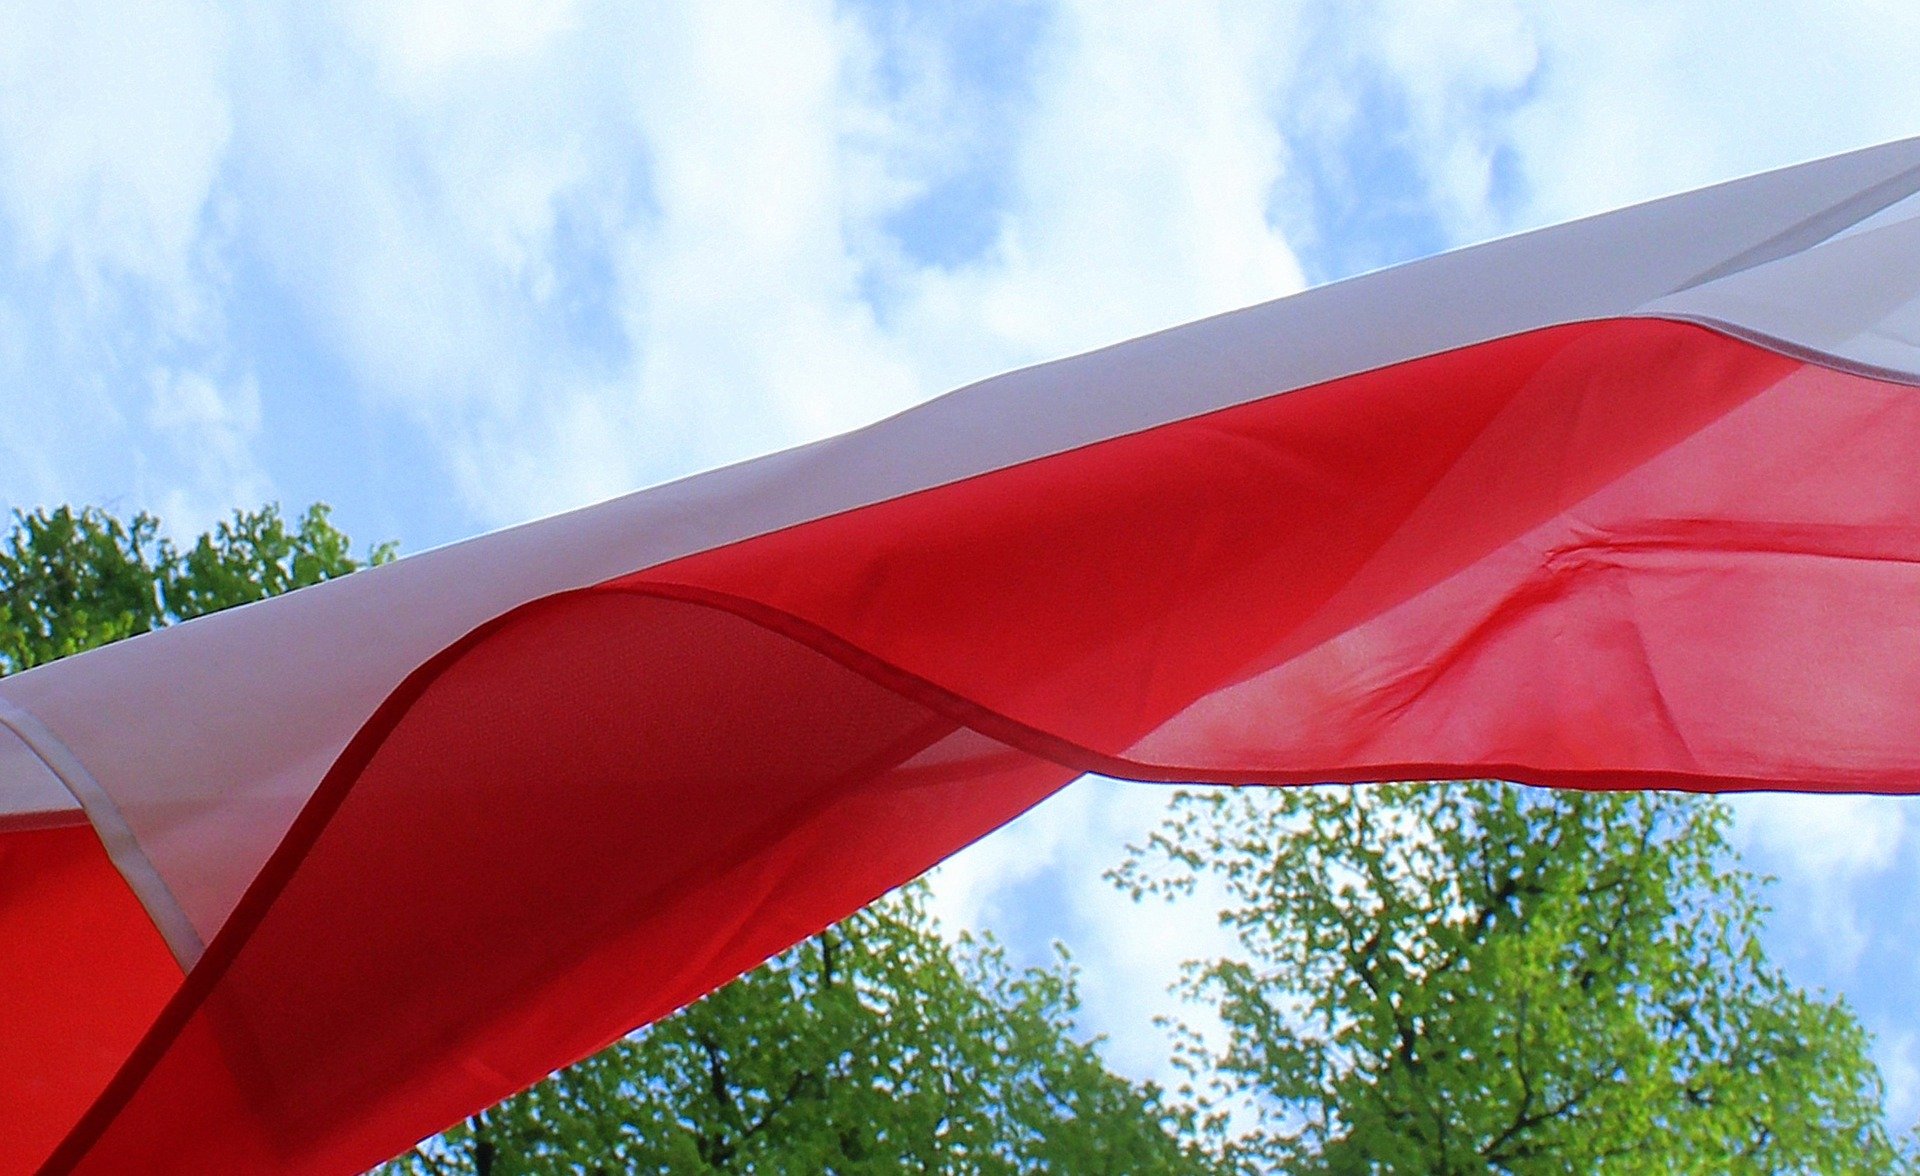 Grafika ilustrująca flagę Polski